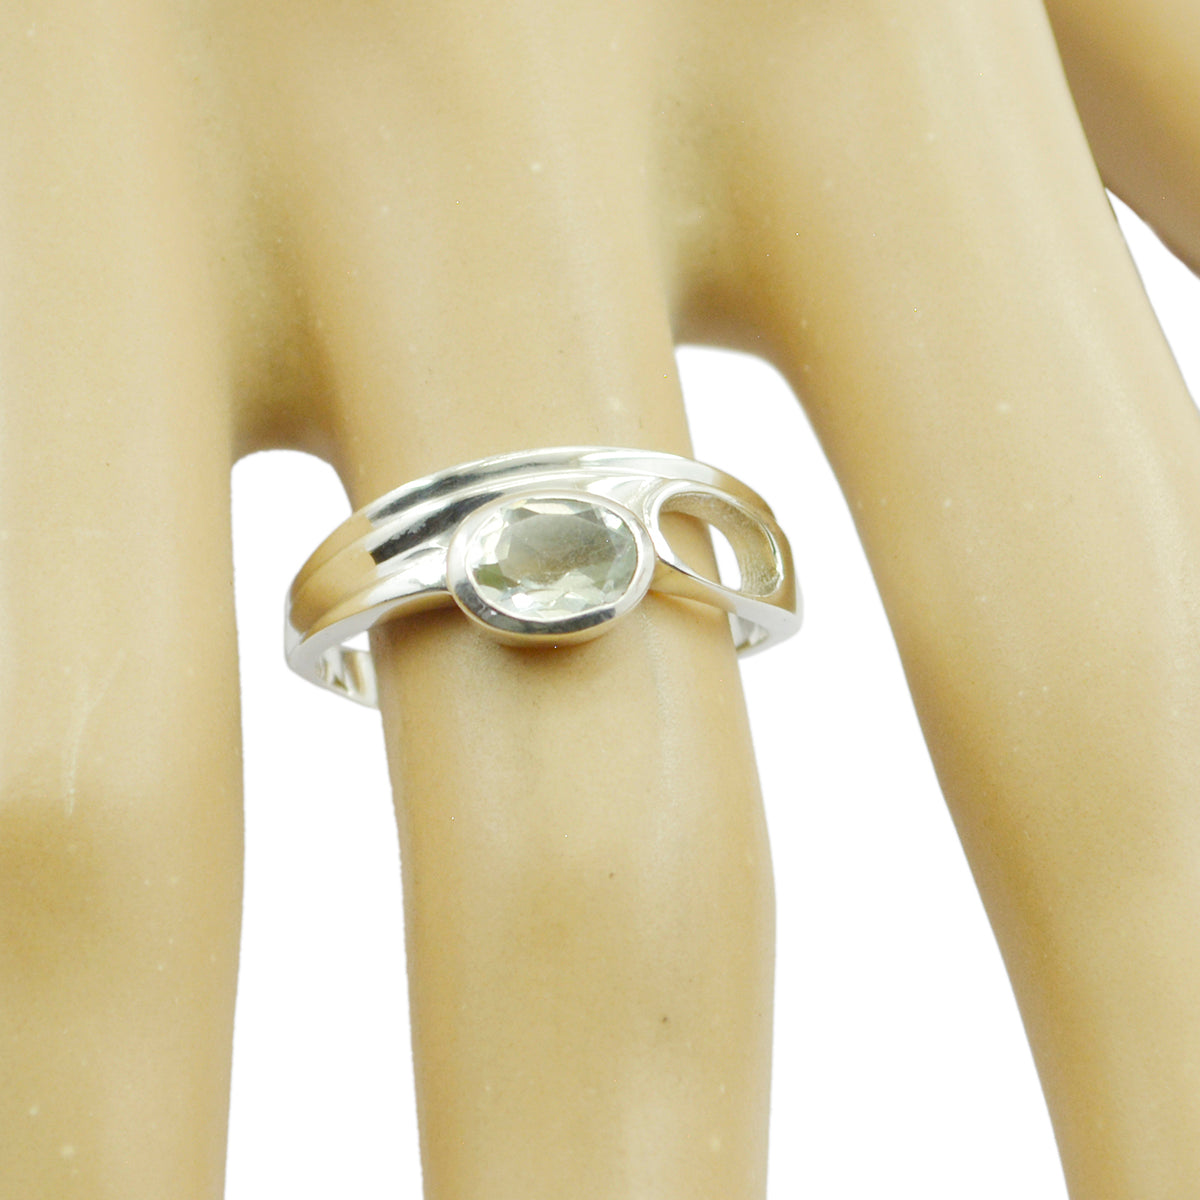 Riyo Classy Gems Green Amethyst Solid Silver Ring Goodmans Jewelry